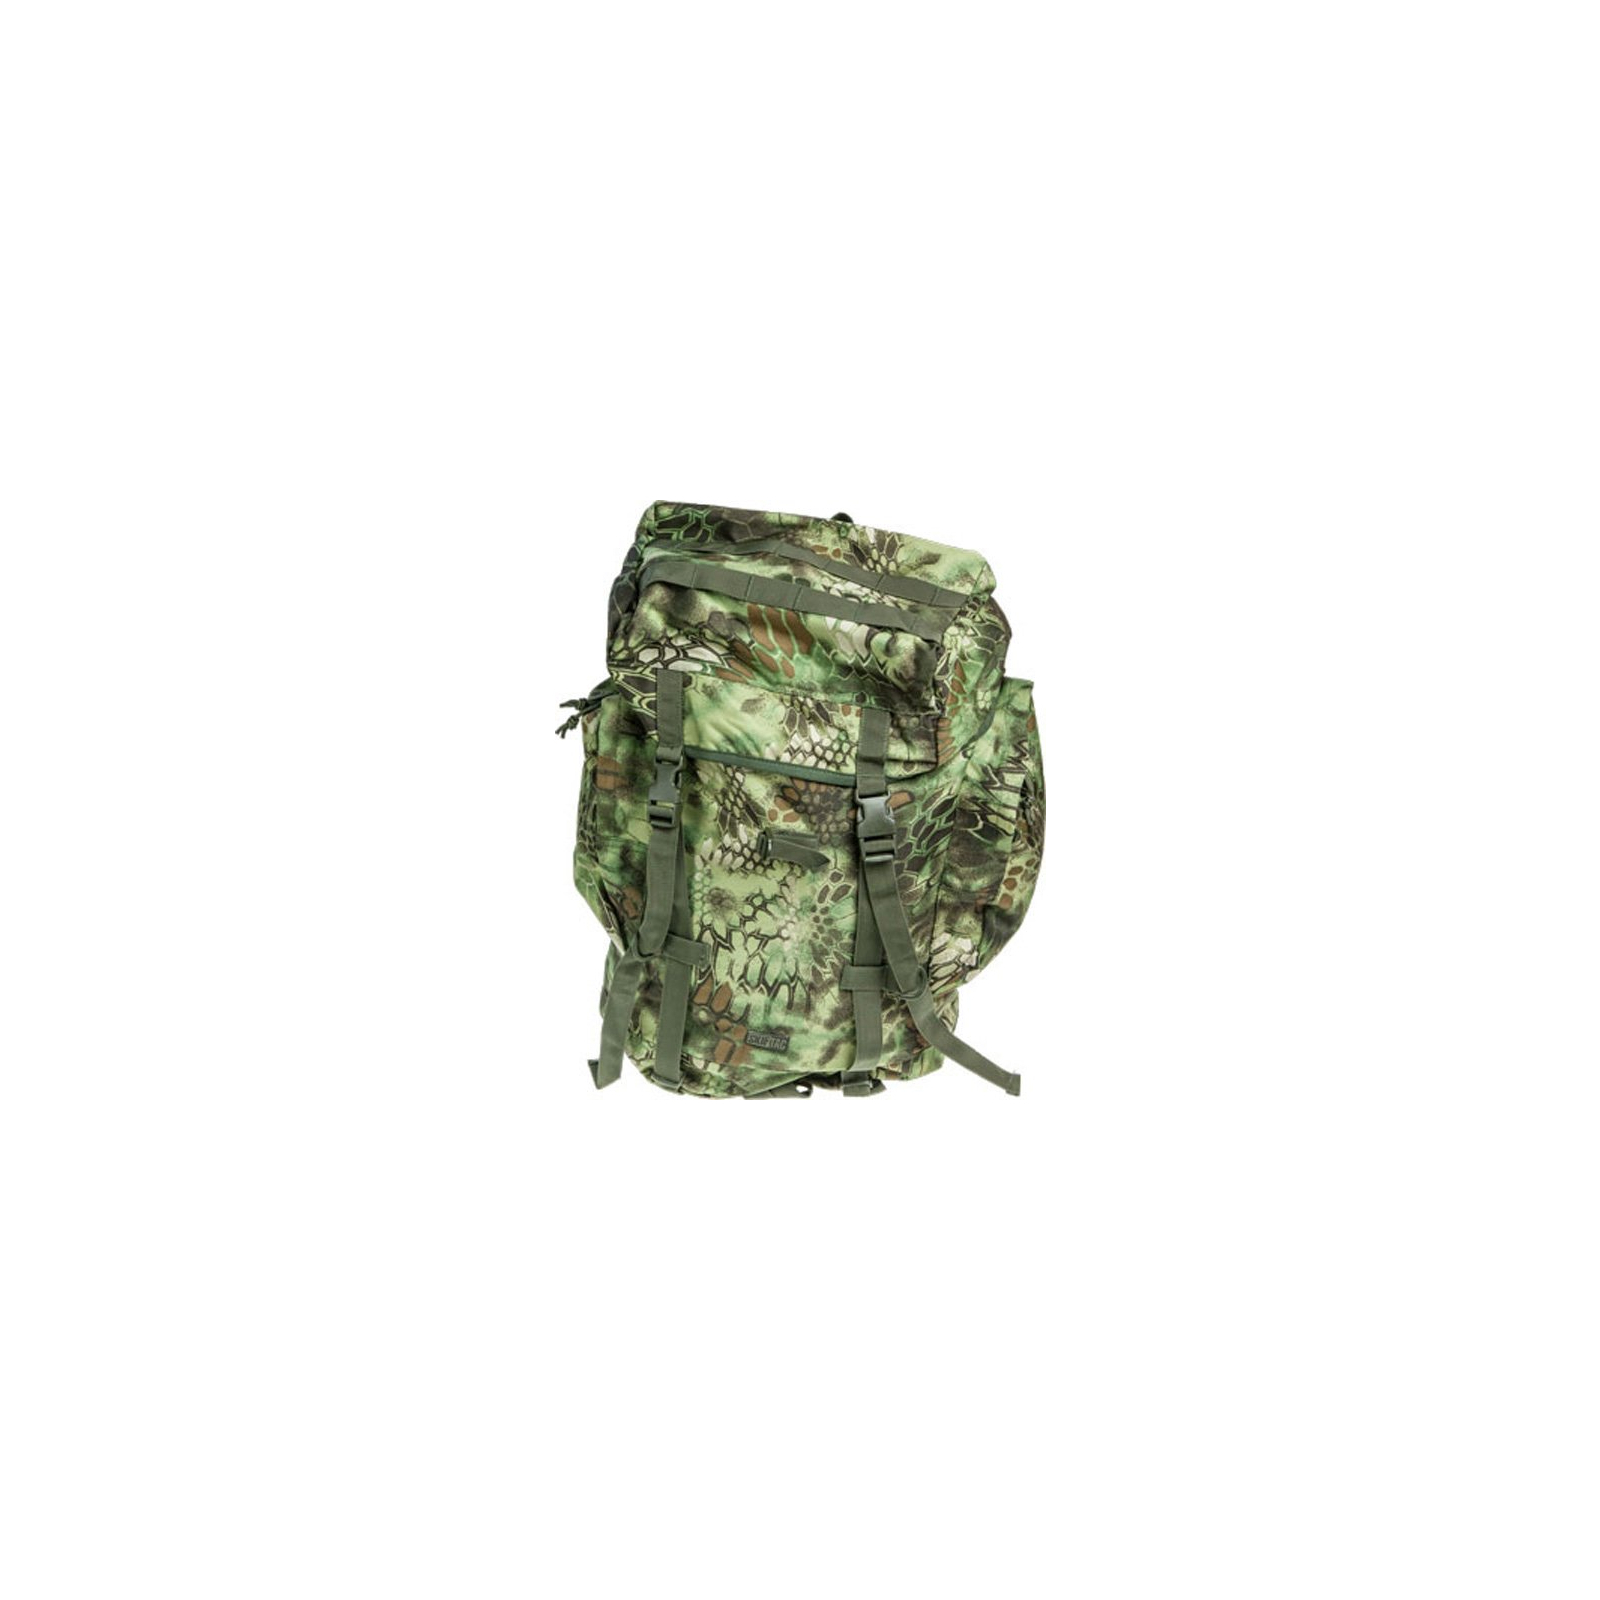 Рюкзак туристичний Skif Tac тактический полевой 45 литров kryptek green (GB0075-KGR)